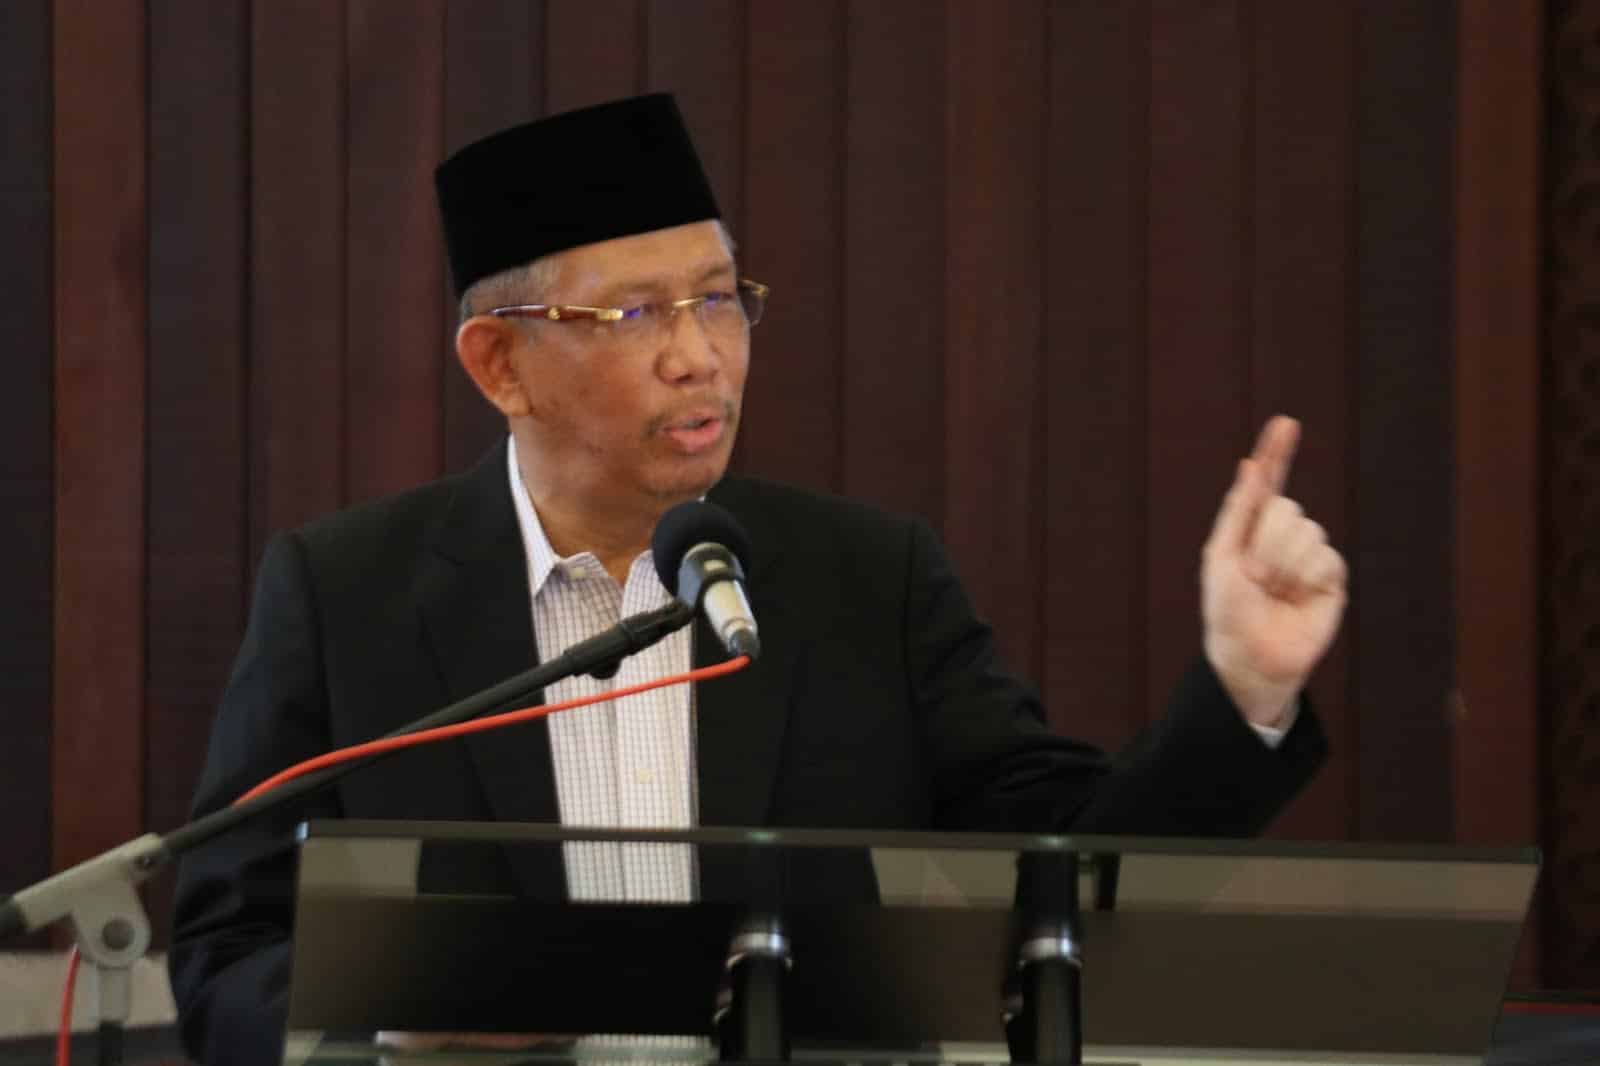 Gubernur Kalimantan Barat, Sutarmidji memberikan kata sambutan dalam acara pembukaan Muswil Muhammadiyah ke-15 dan Aisyiyah ke-11 Kalbar, di Aula Pendopo Gubernur Kalbar, Sabtu (04/02/2023). (Foto: Biro Adpim For KalbarOnline.com)